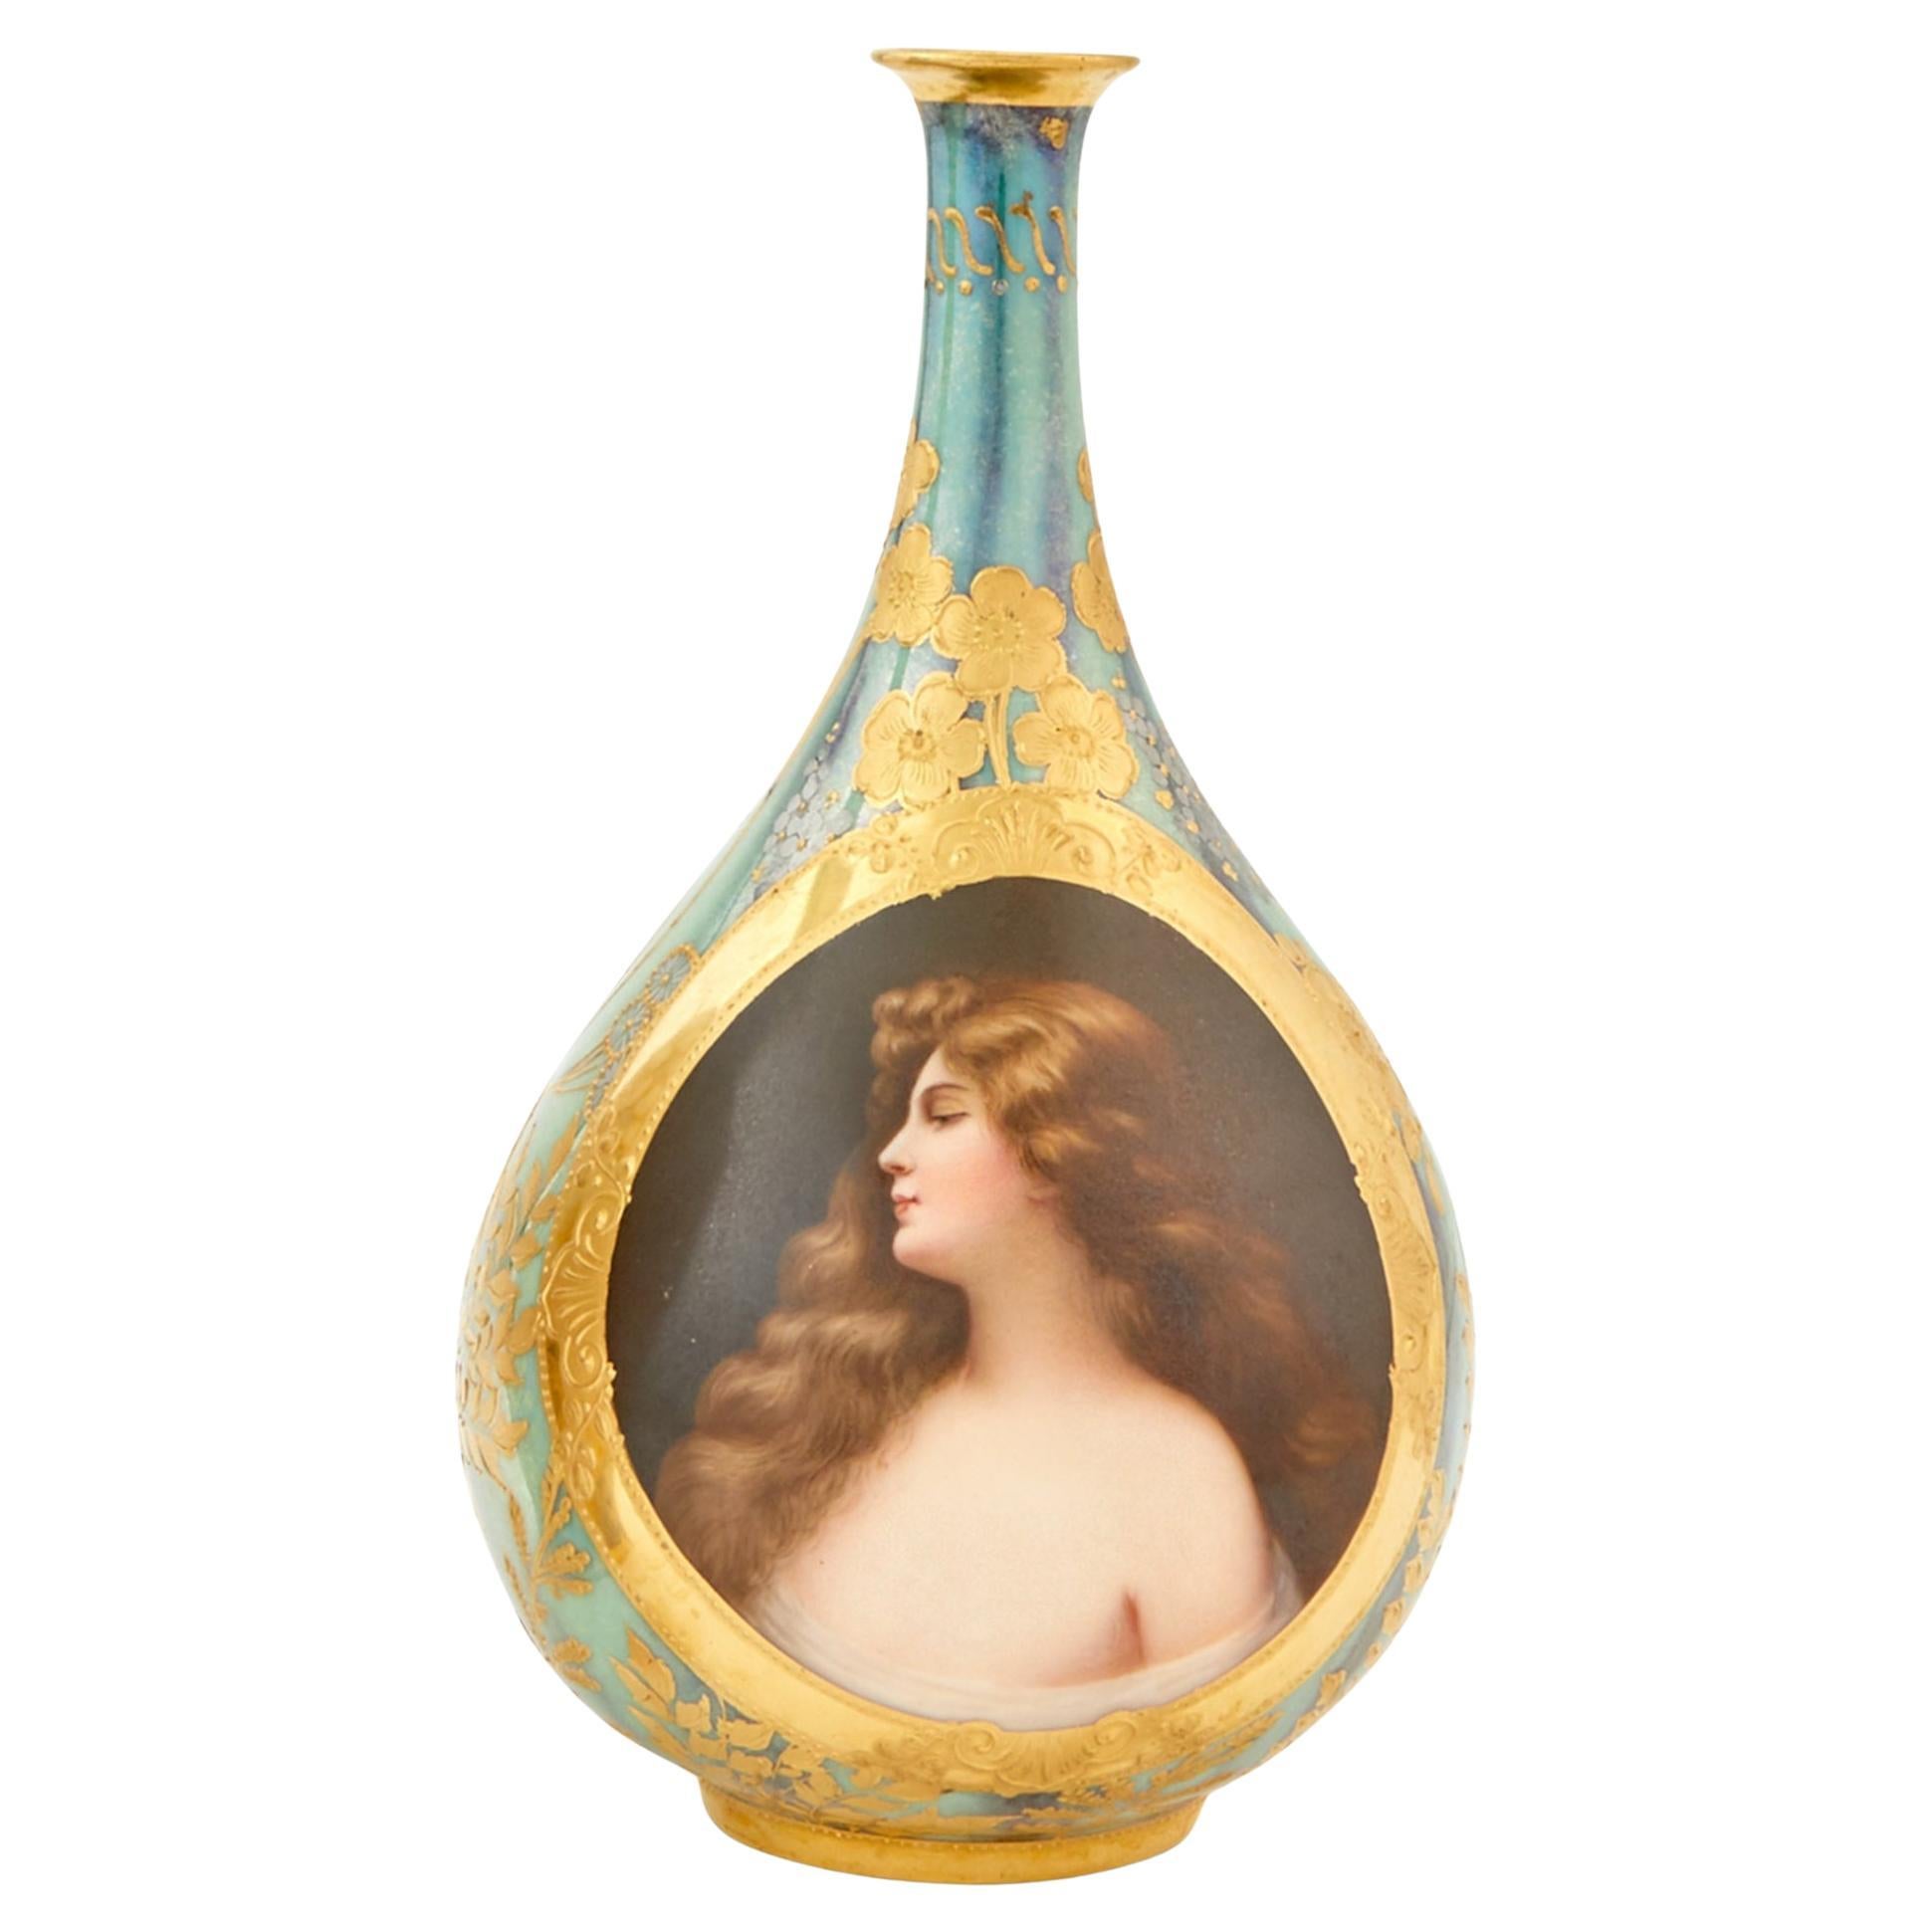  Fine Royal Vienna Hand-Painted Porcelain Portrait Cabinet Vases For Sale